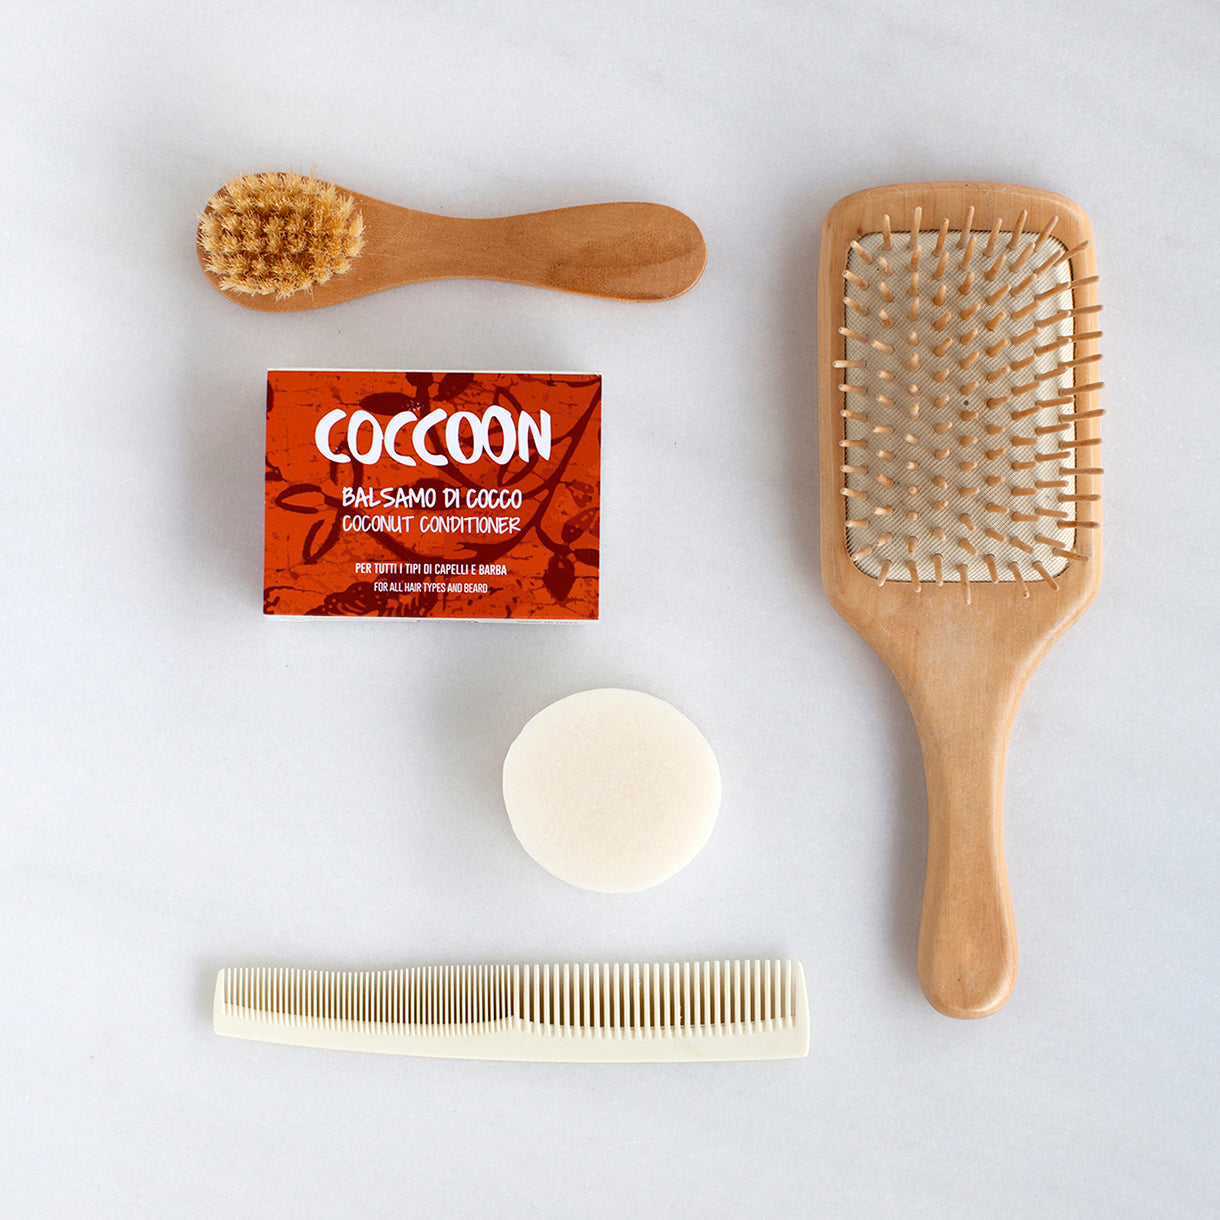 Confezione Balsamo di Cocco Coccoon con spazzole e pettini e panetto nudo